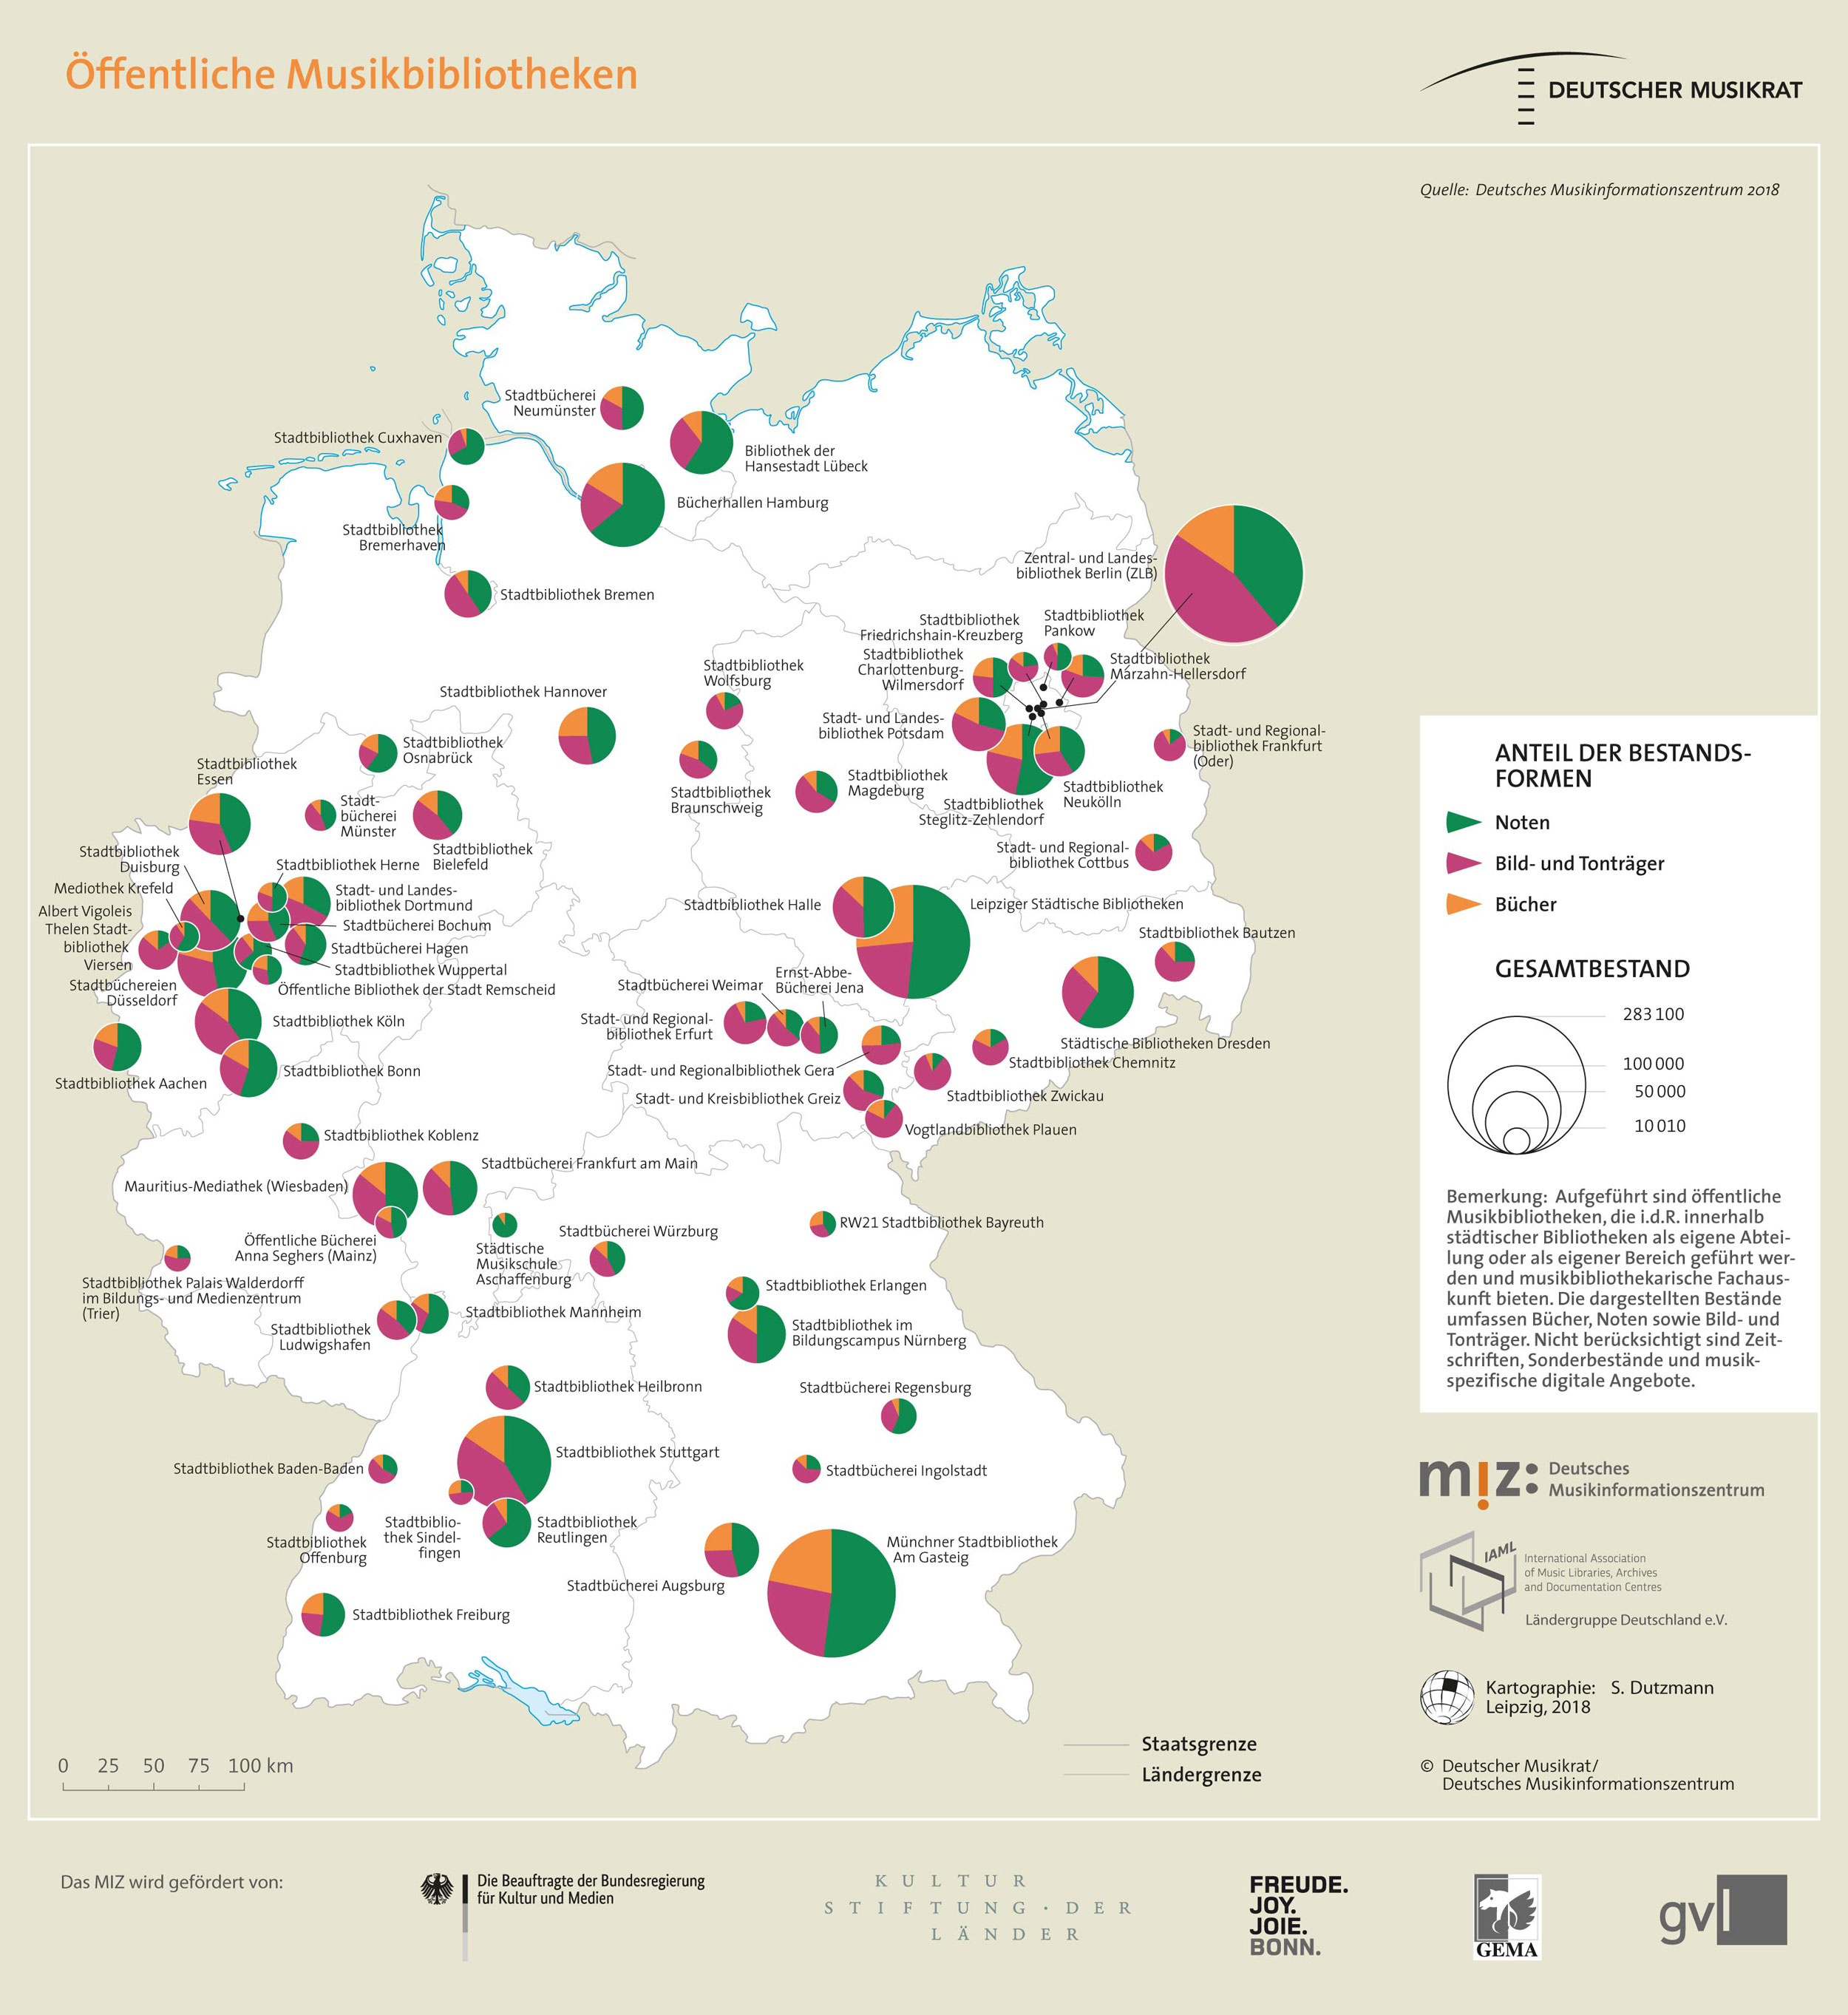 Topografie: Öffentliche Musikbibliotheken in Deutschland.